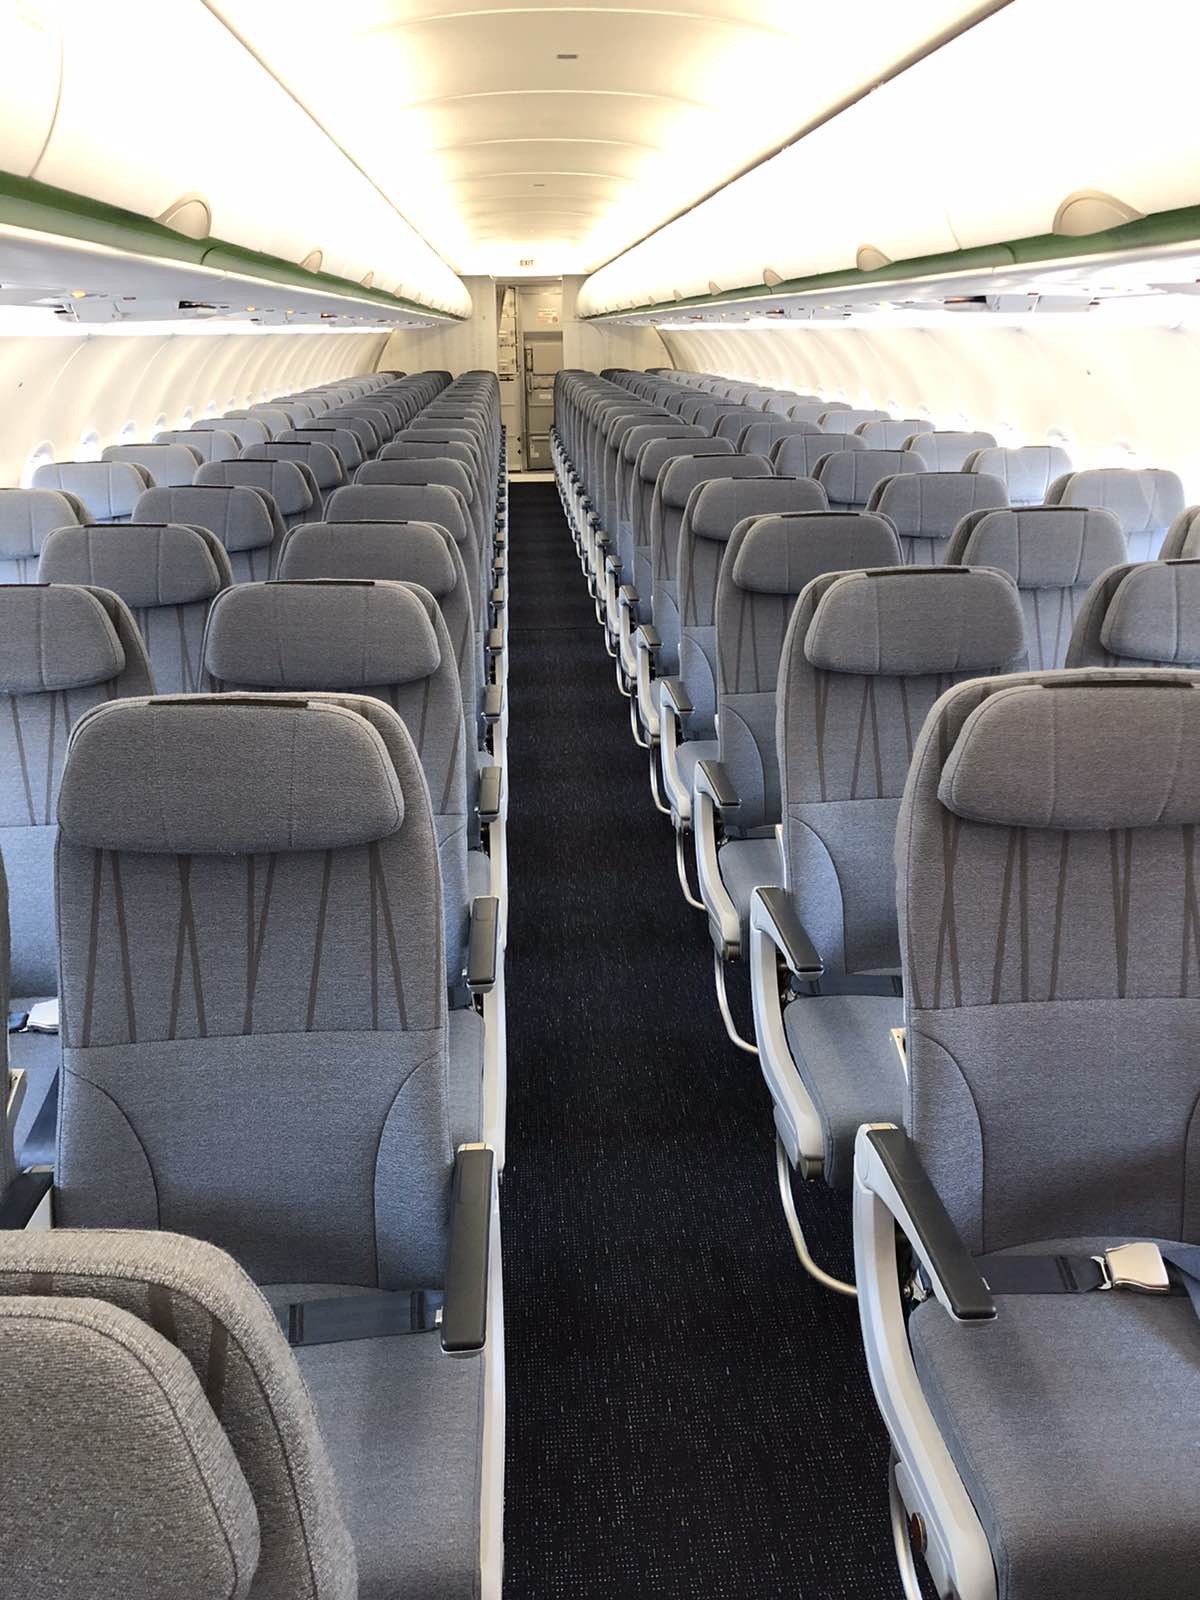 Bamboo Airways đón máy bay Airbus A320neo đầu tiên trong chiếc áo “Fly Green” ấn tượng - Ảnh 3.